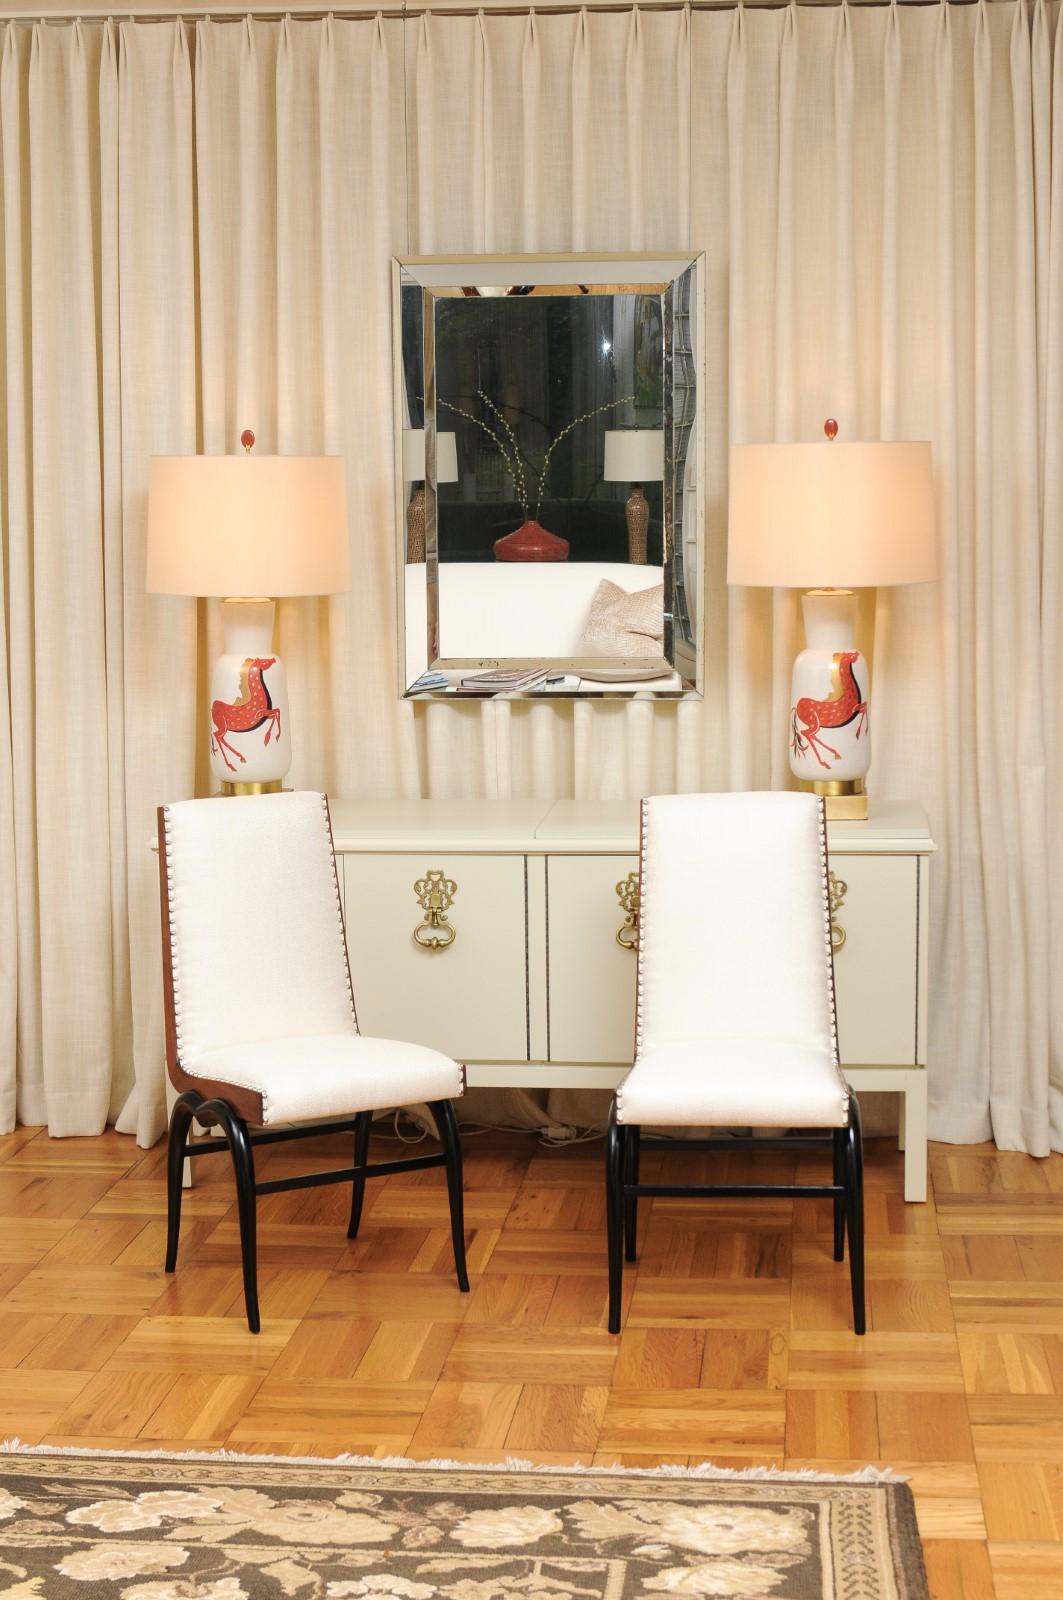 Ces magnifiques chaises de salle à manger sont expédiées telles qu'elles ont été photographiées par des professionnels et décrites dans le texte de l'annonce, entièrement prêtes à être installées. Ce grand ensemble est unique sur le marché mondial.